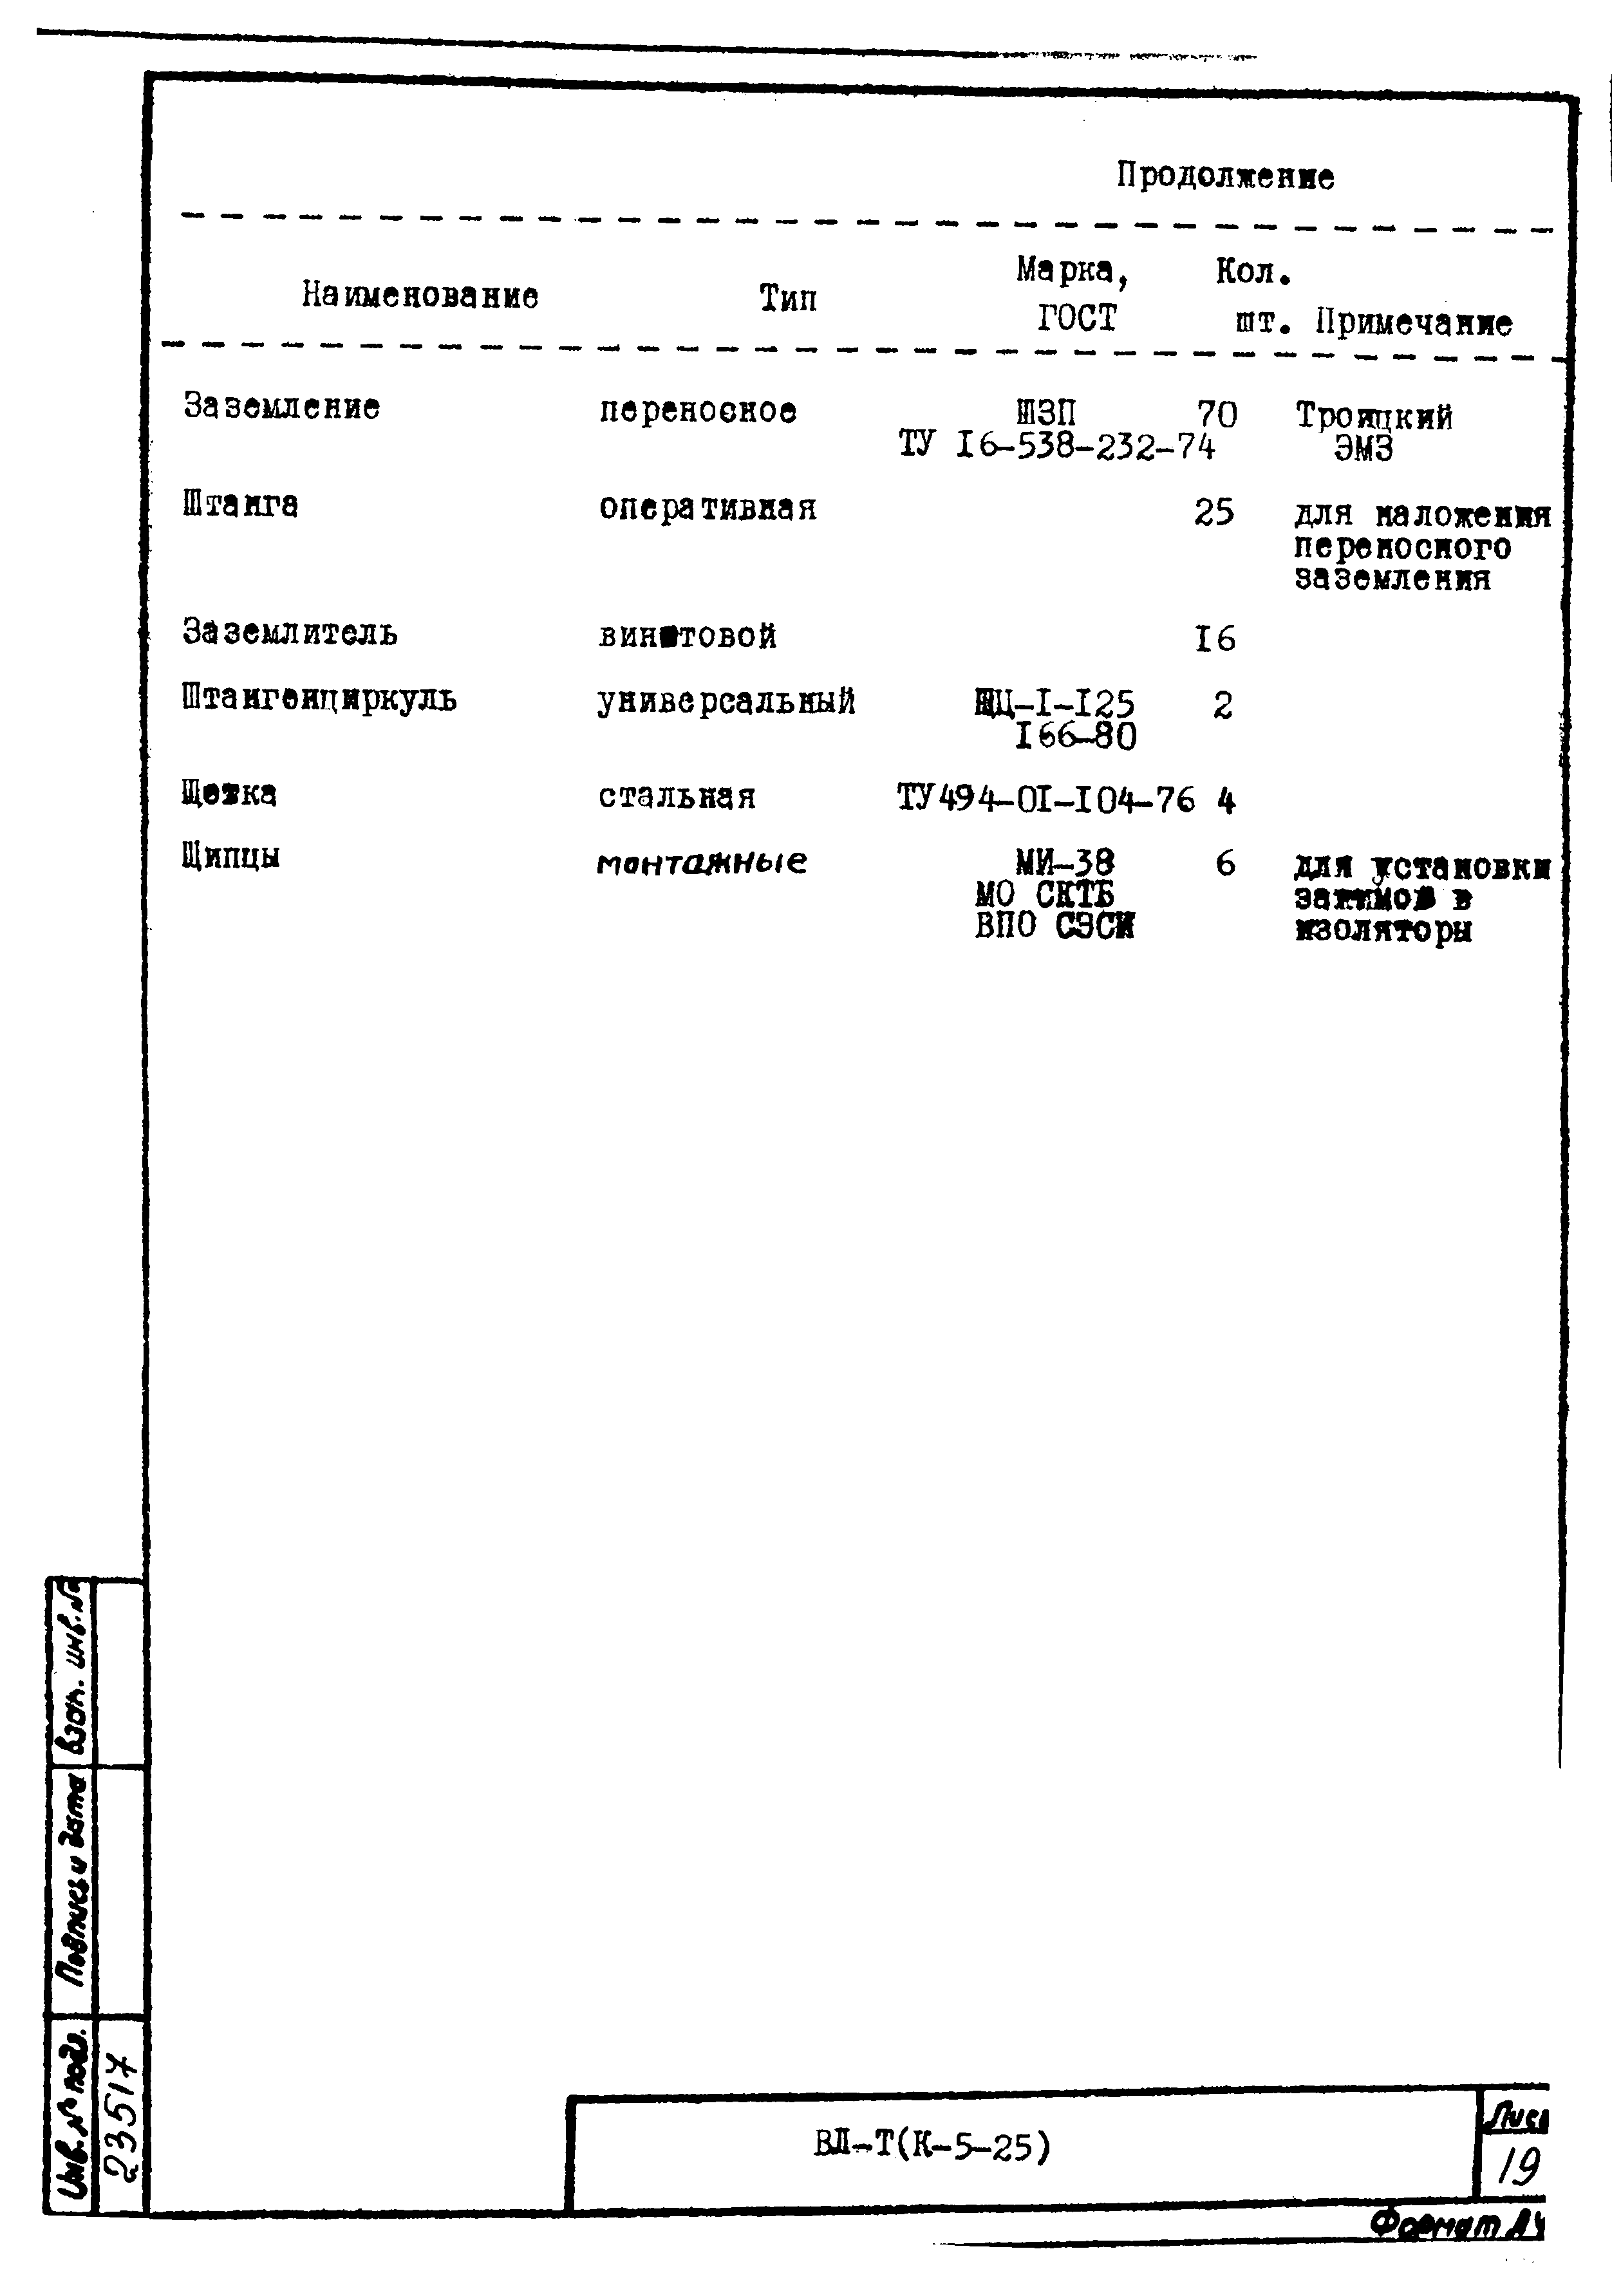 Технологическая карта К-5-25-19